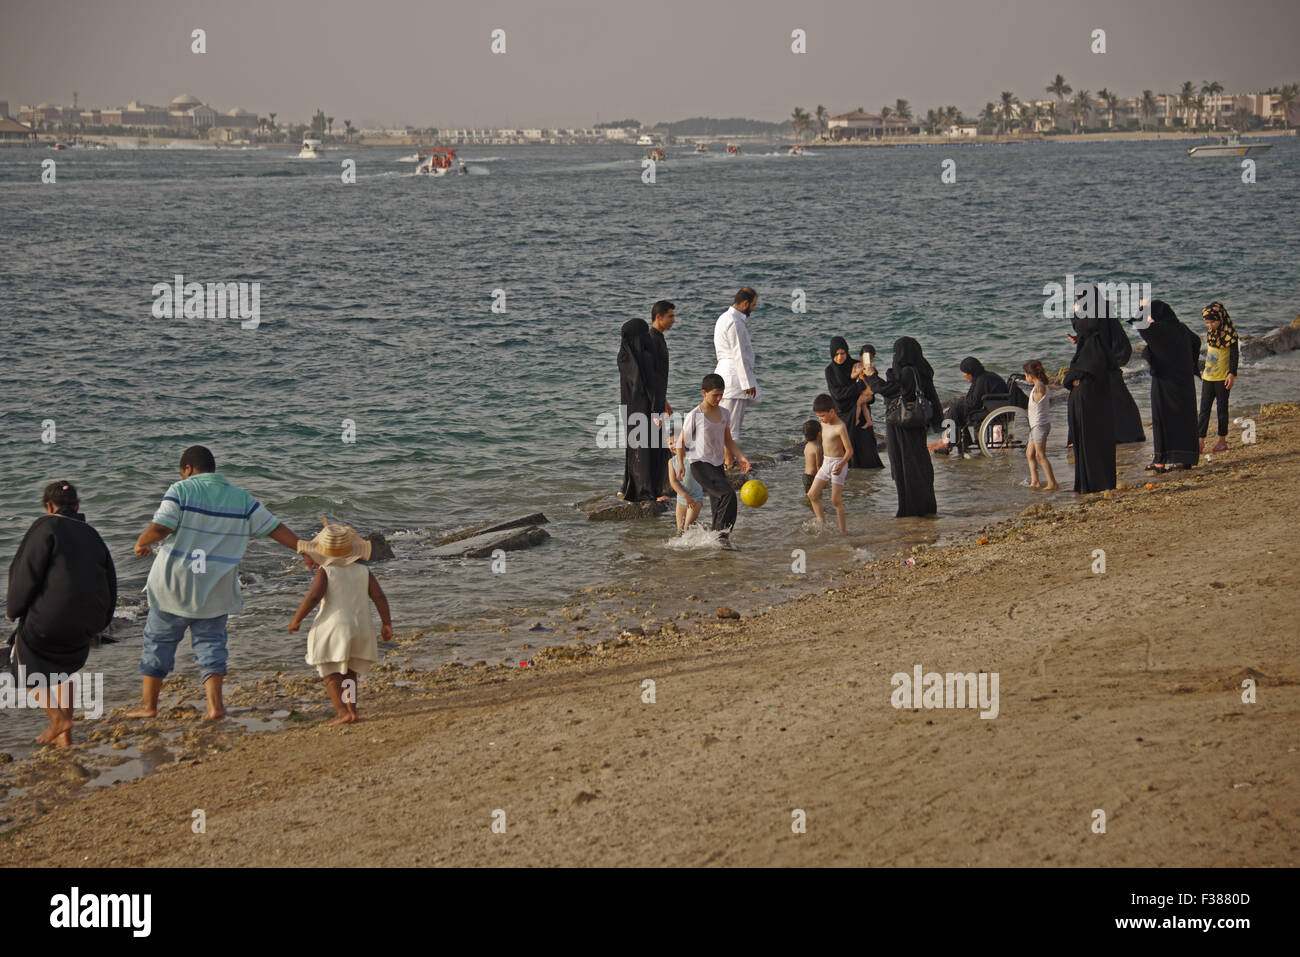 Una tipica scena presso la Corniche a Jeddah, Arabia Saudita. Famiglie passeggiare sulla spiaggia del Mar Rosso, pregare e guardare il tramonto Foto Stock